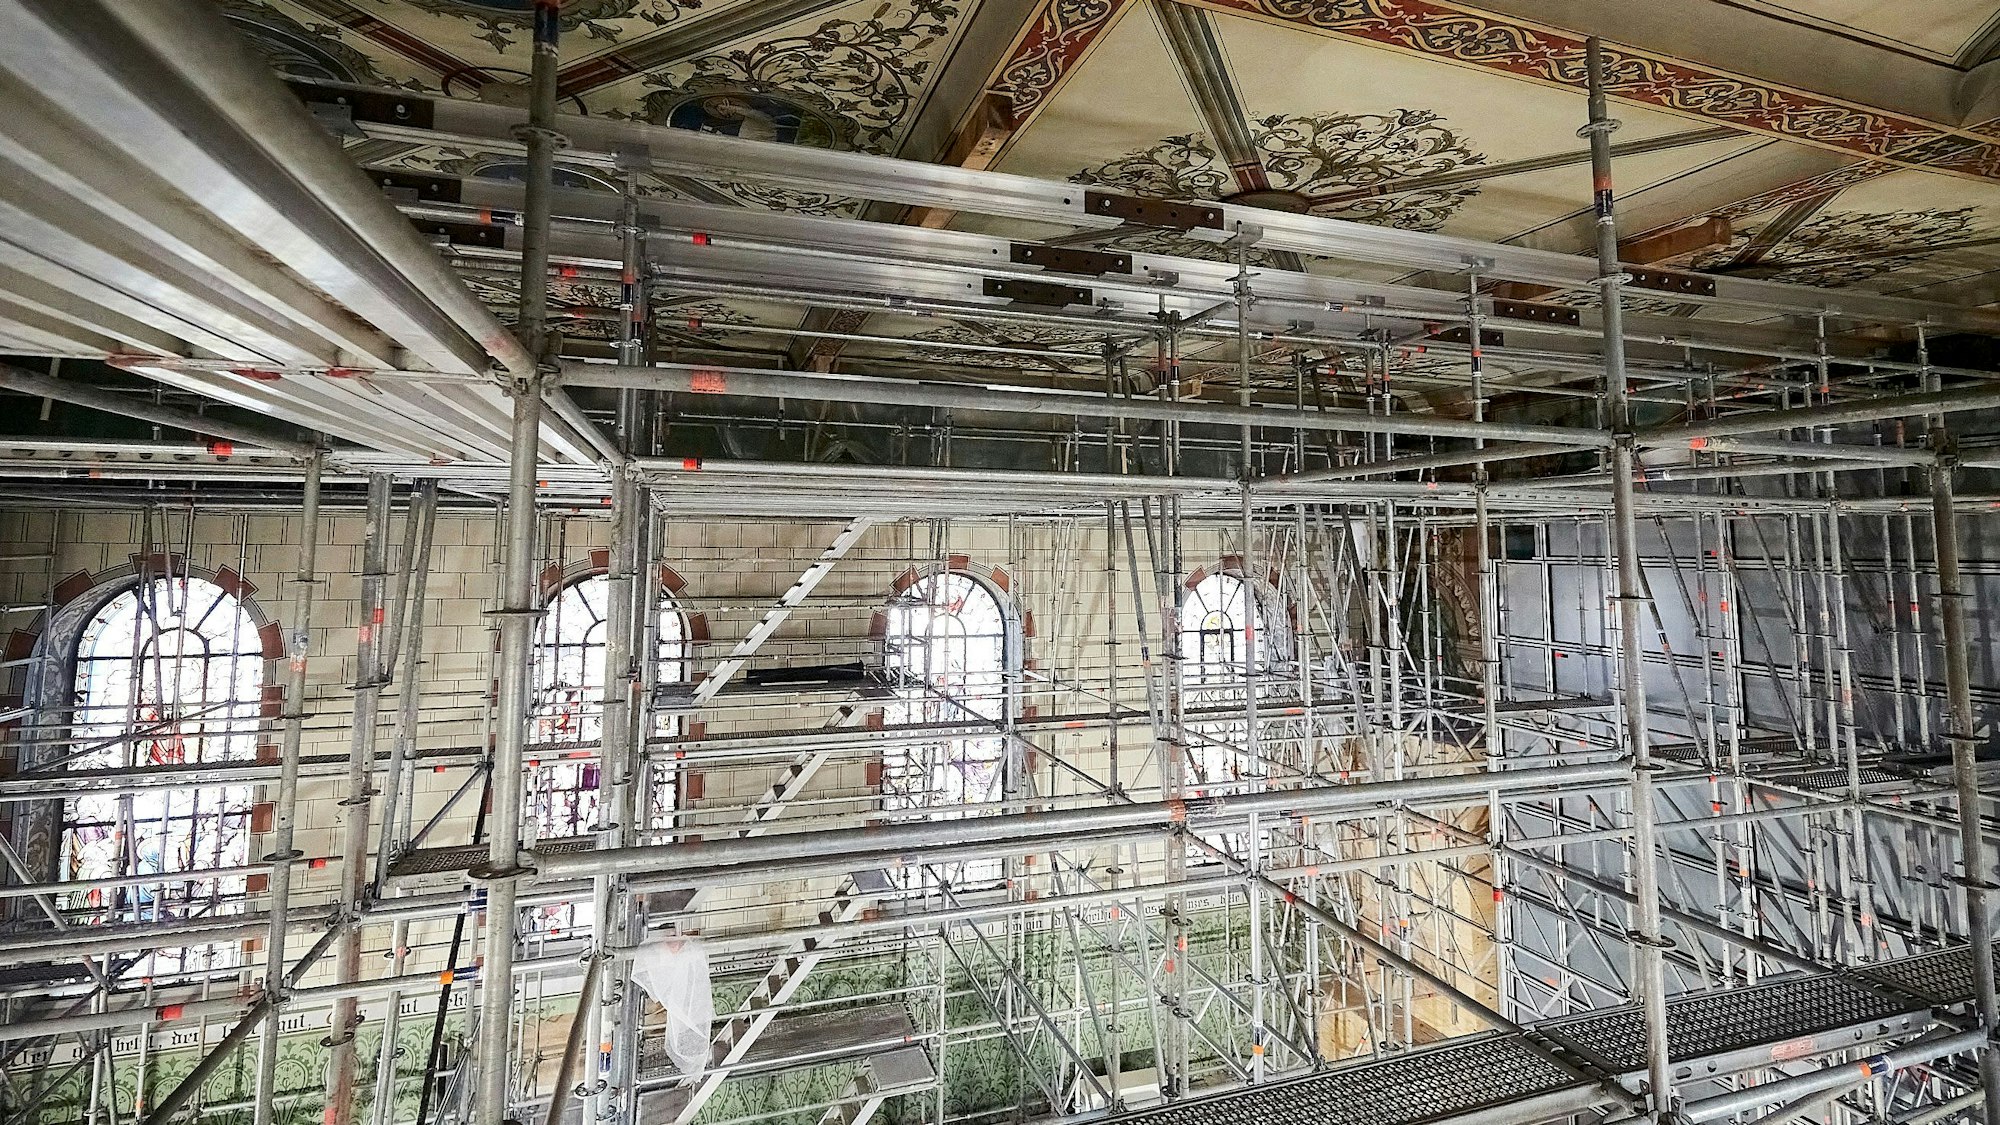 Eine aufwendige Gerüstkonstruktion ist im Innenraum der Pfarrkirche in Holzheim aufgebaut worden, um die Decke abzustützen.